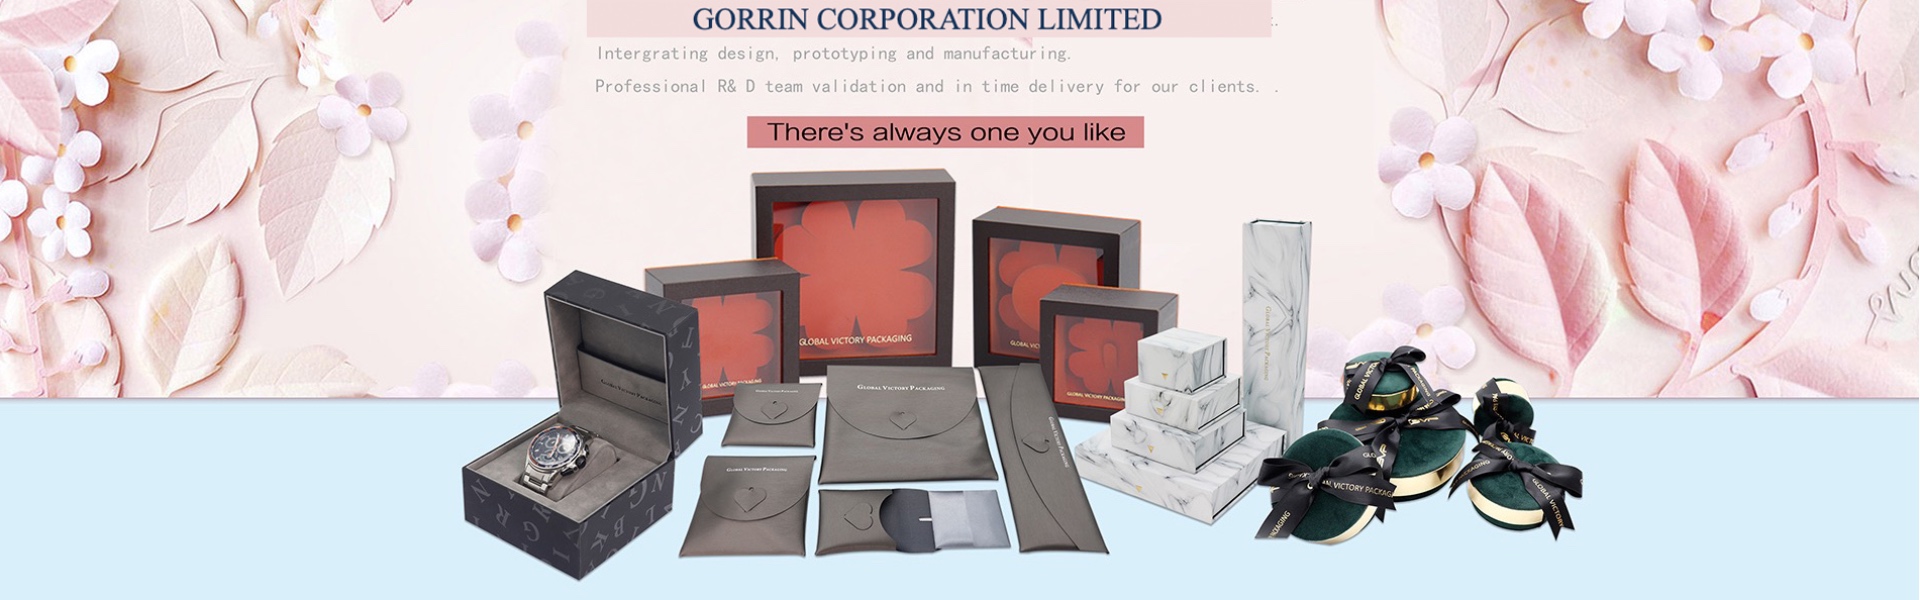 Caixa de papel, jóias, caixa de jóias.,Gorrin corporation limited